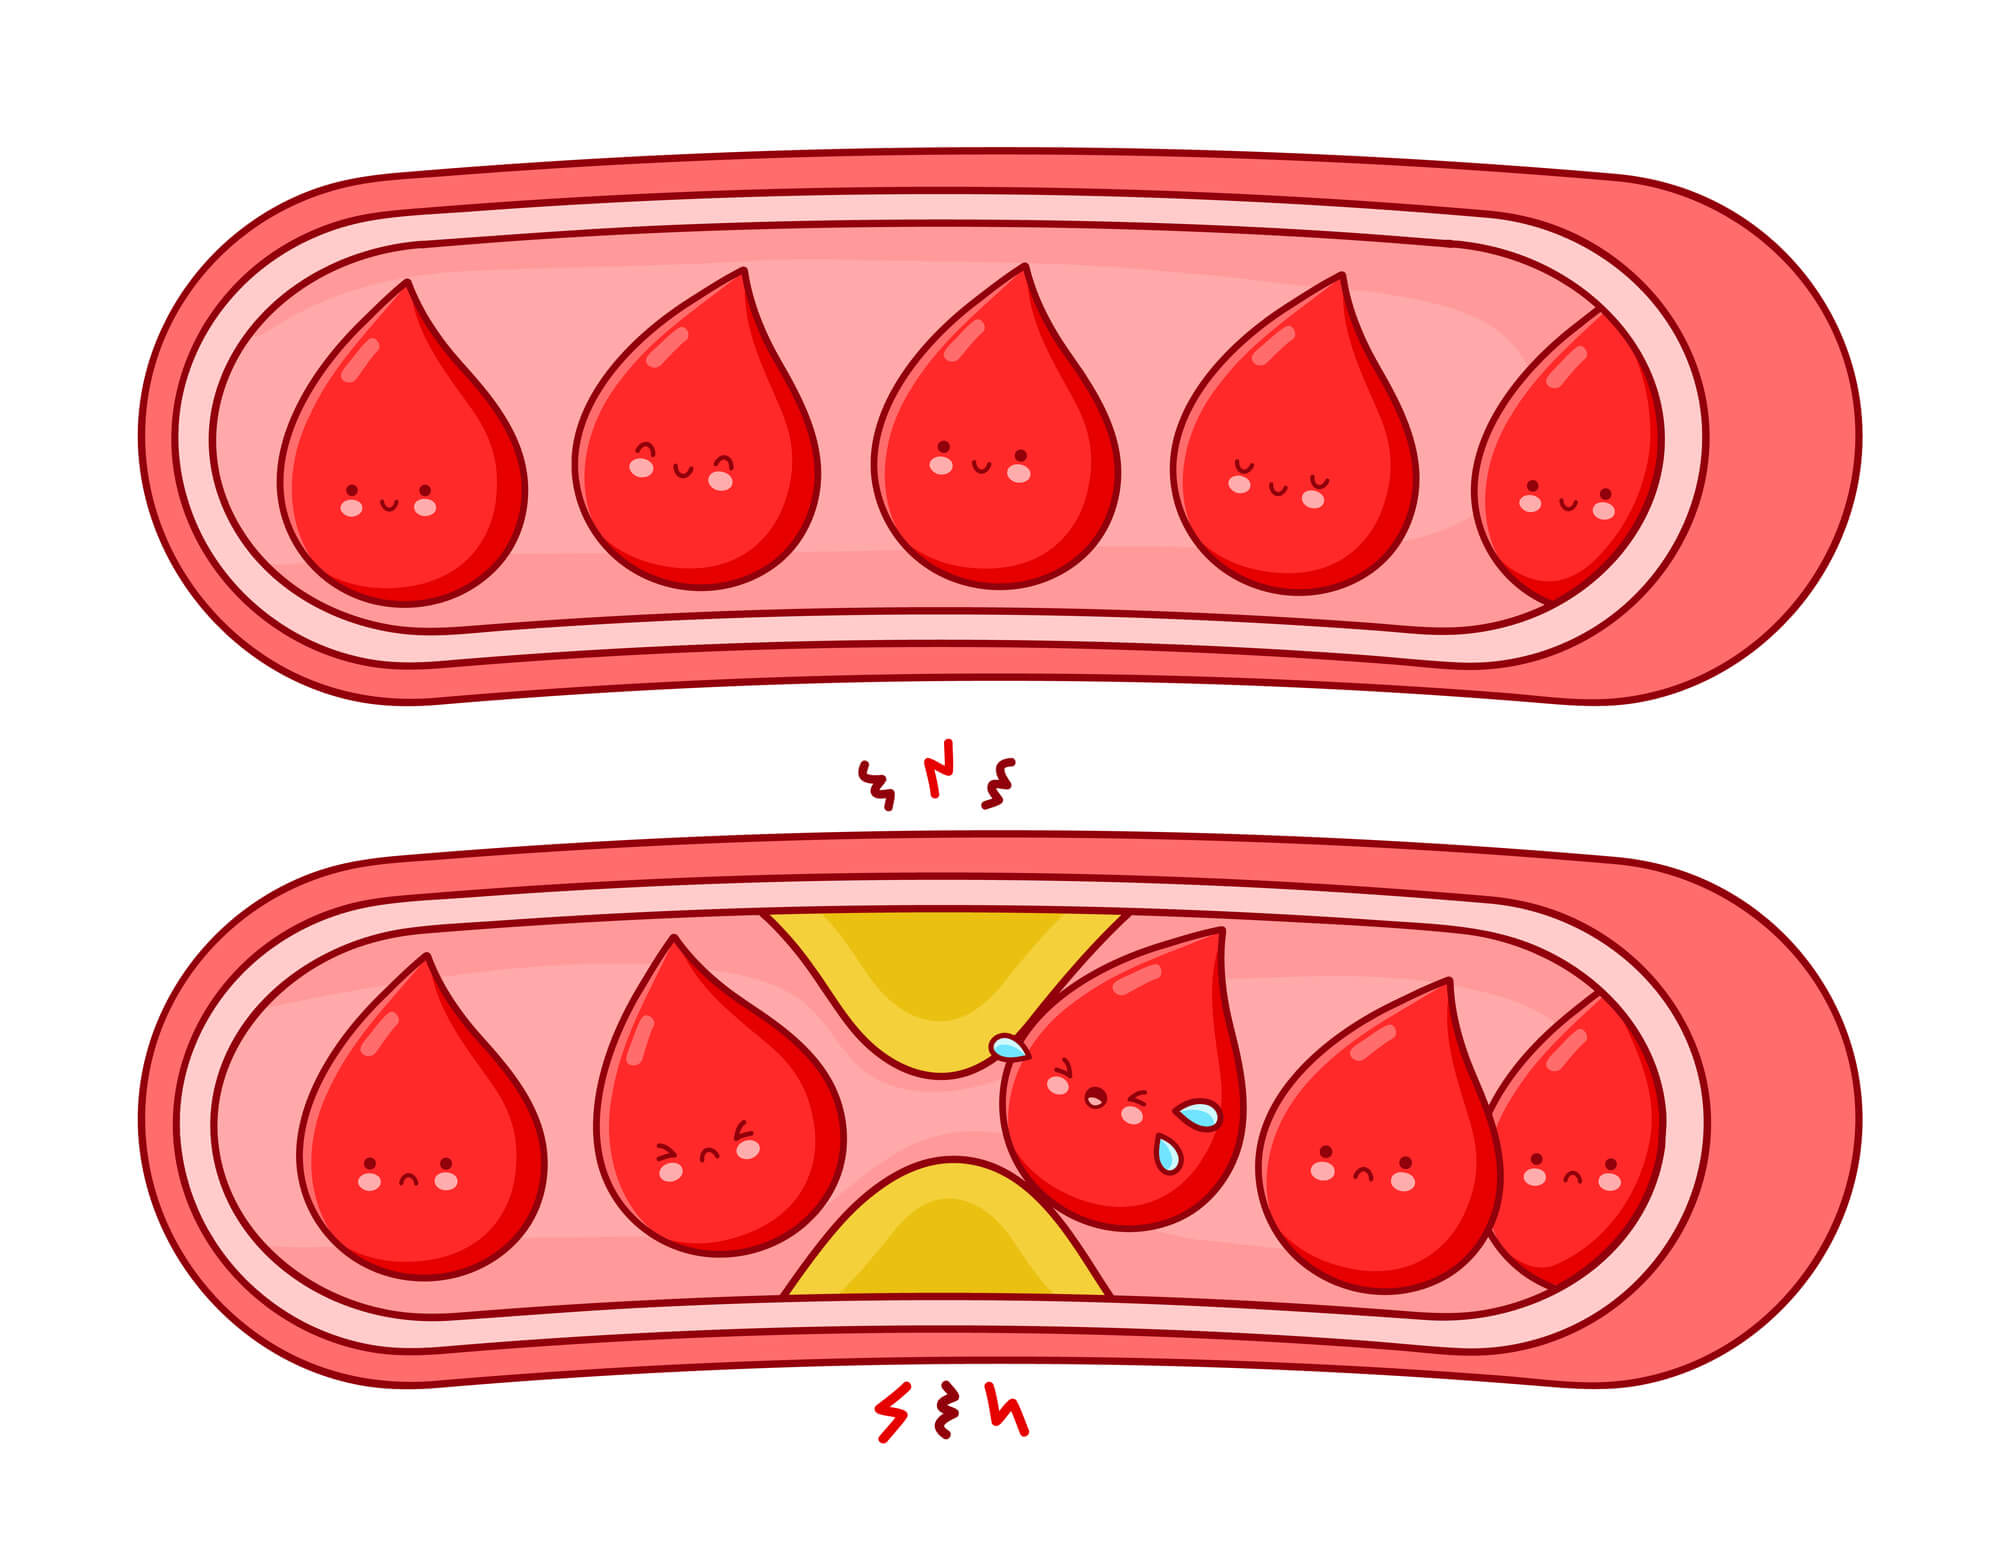 כלי דם בריאים לעומת כלי דם סתומים. <a href="https://depositphotos.com. ">המחשה: depositphotos.com</a>